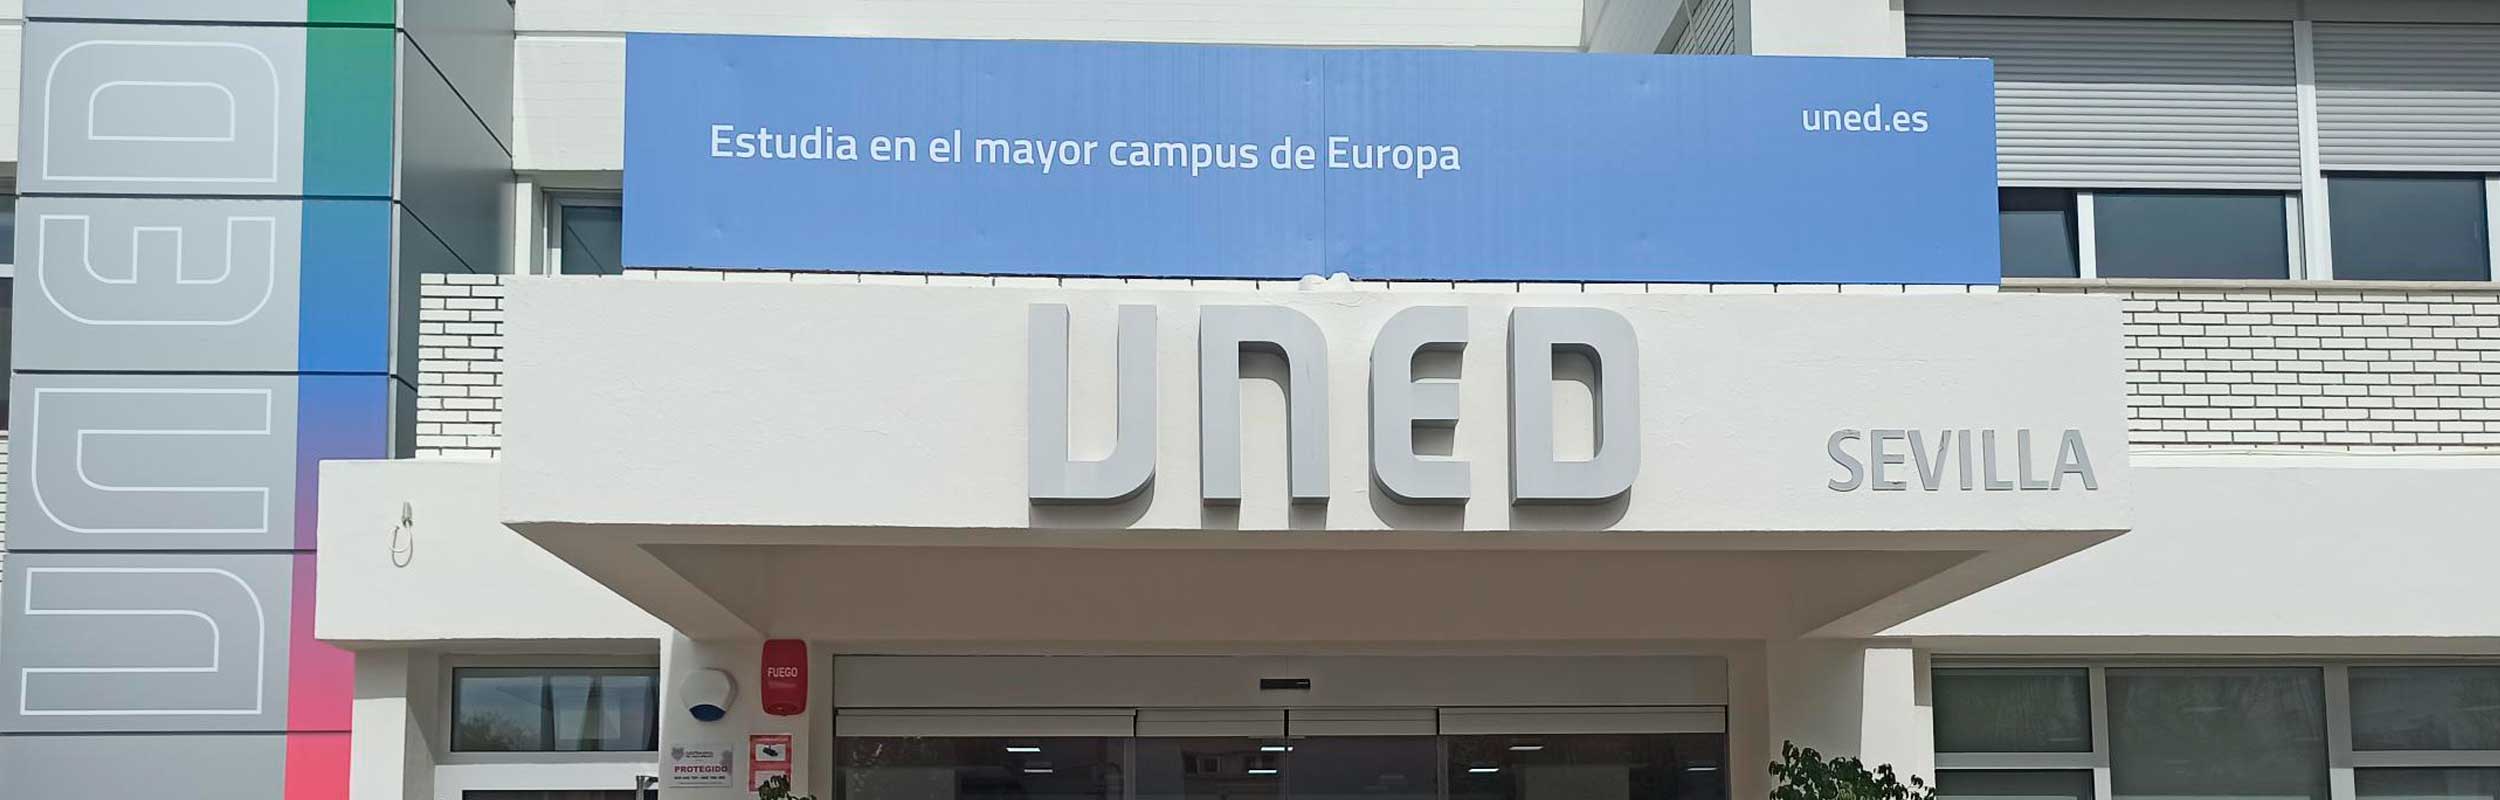 Organigrama del Centro Asociado de Sevilla - UNED